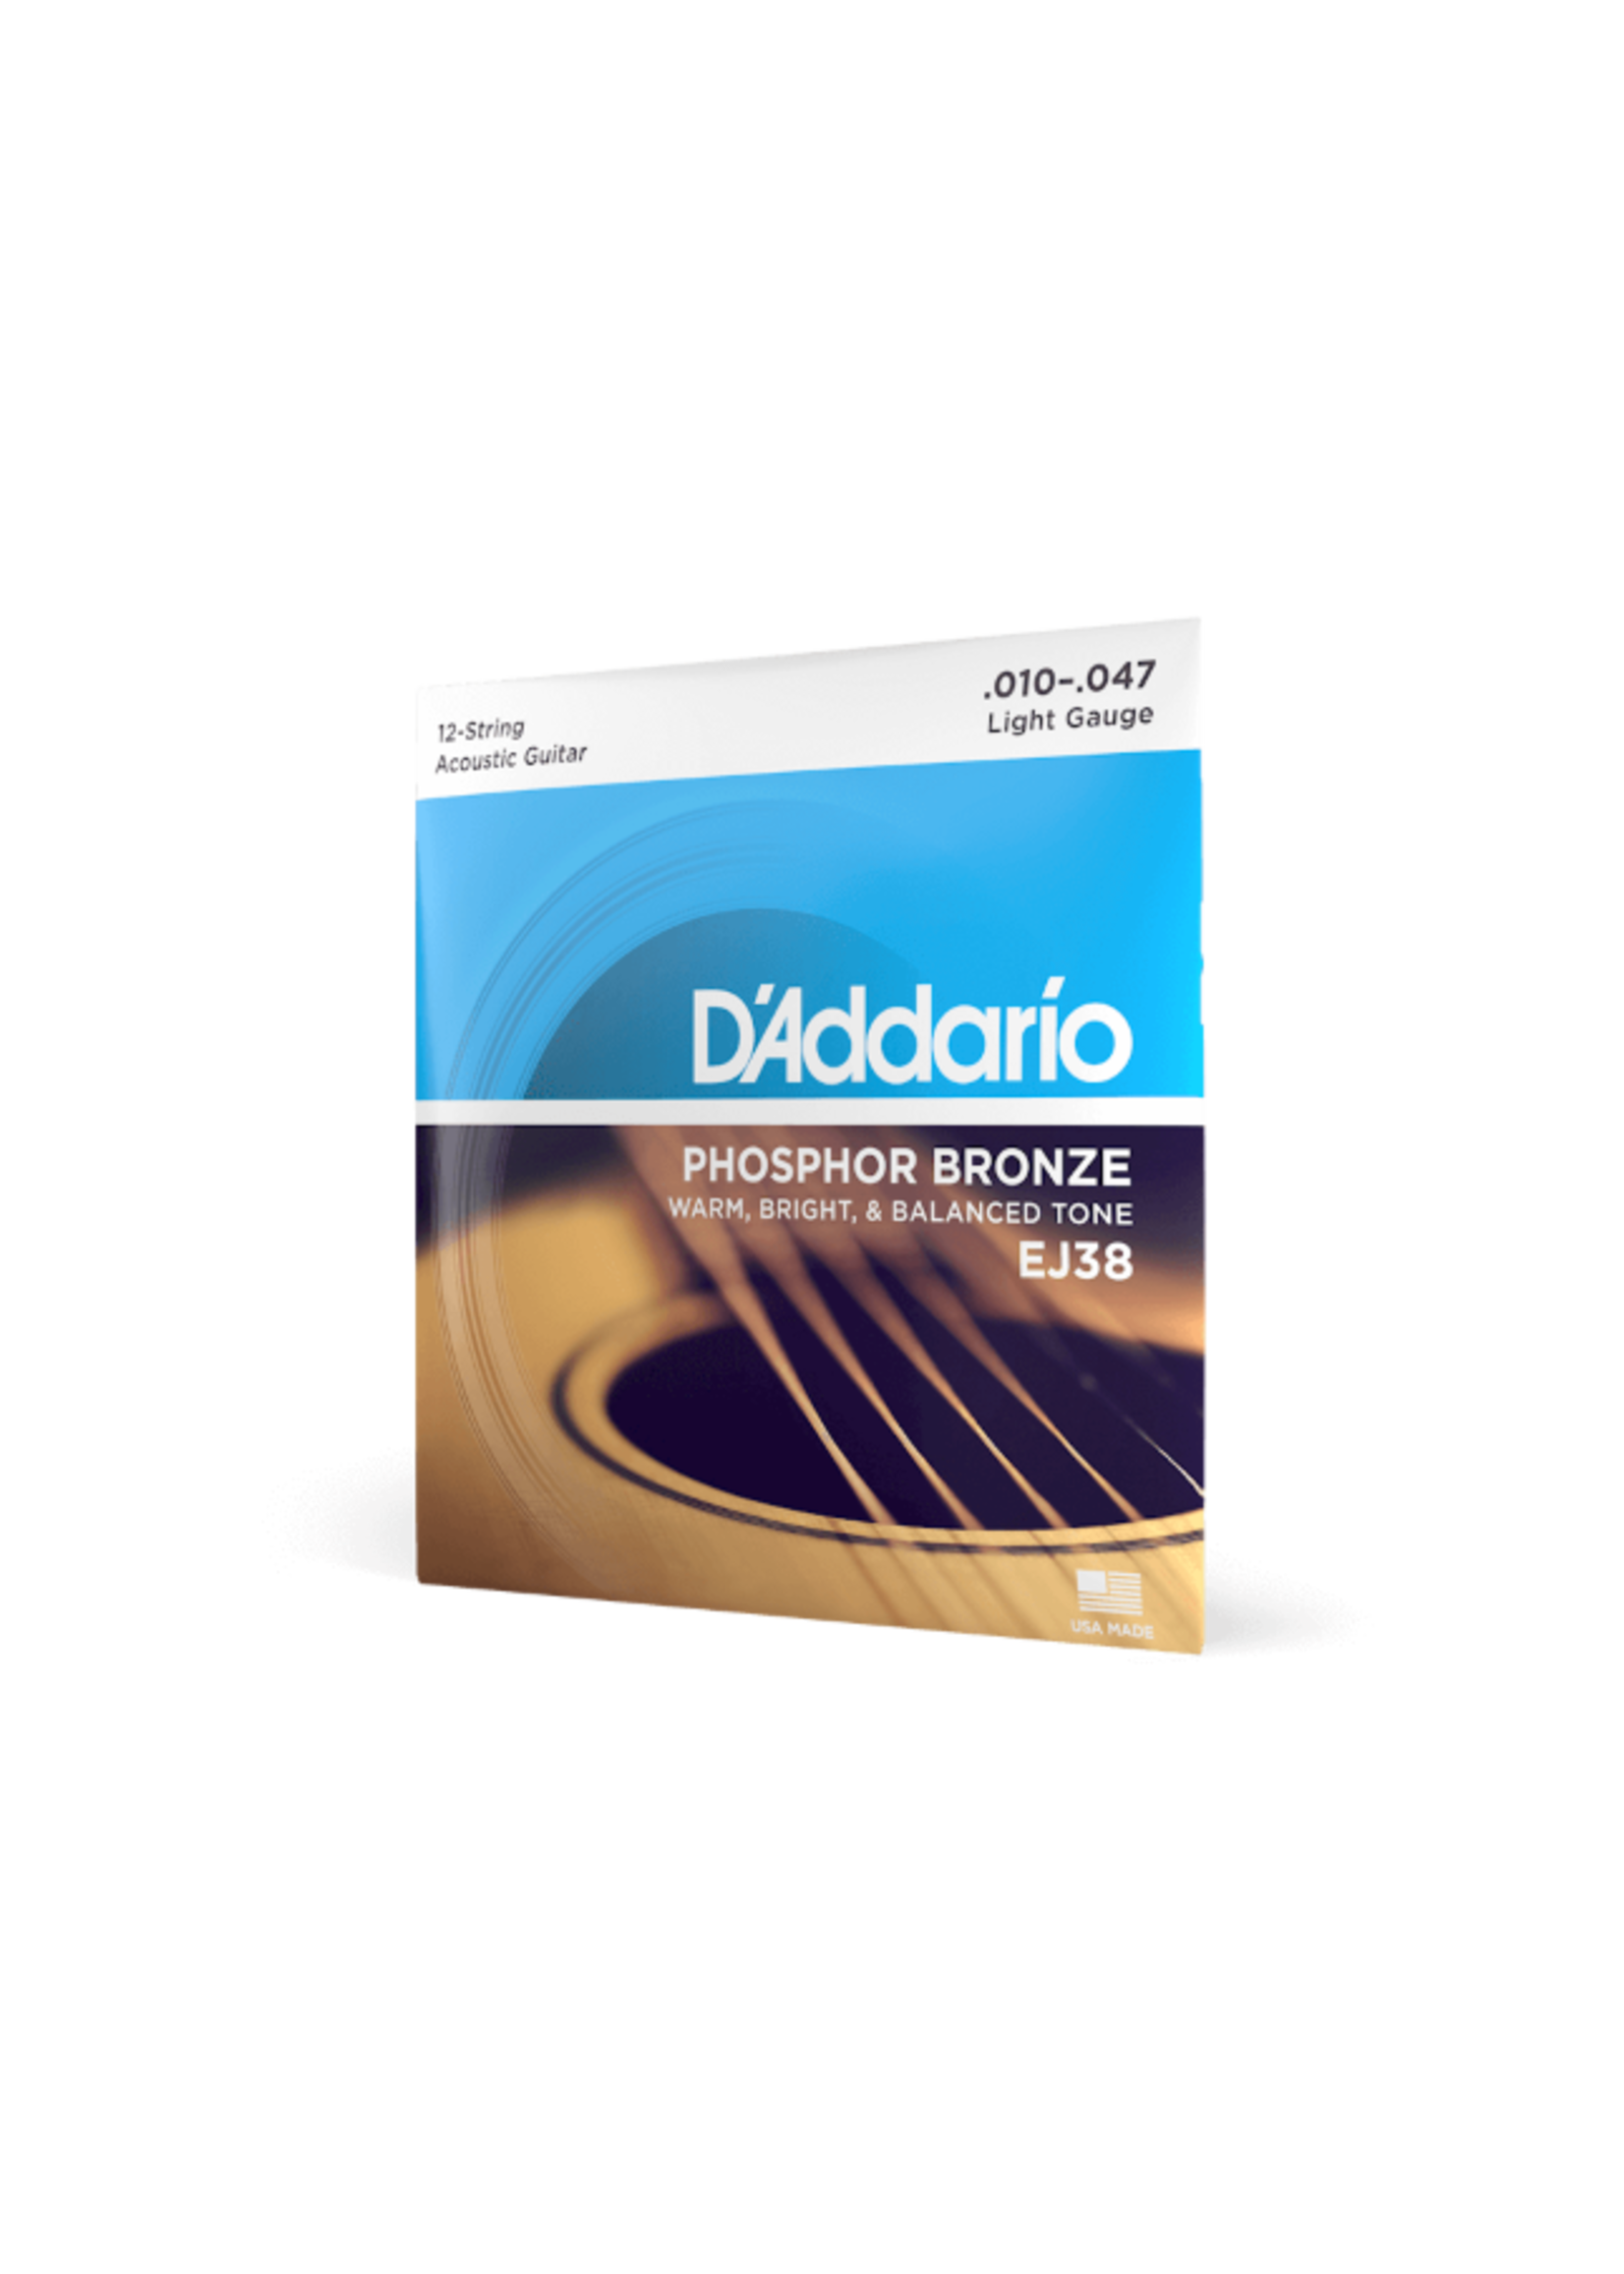 D'Addario D'Addario Acoustic Strings Phosphor Bronze